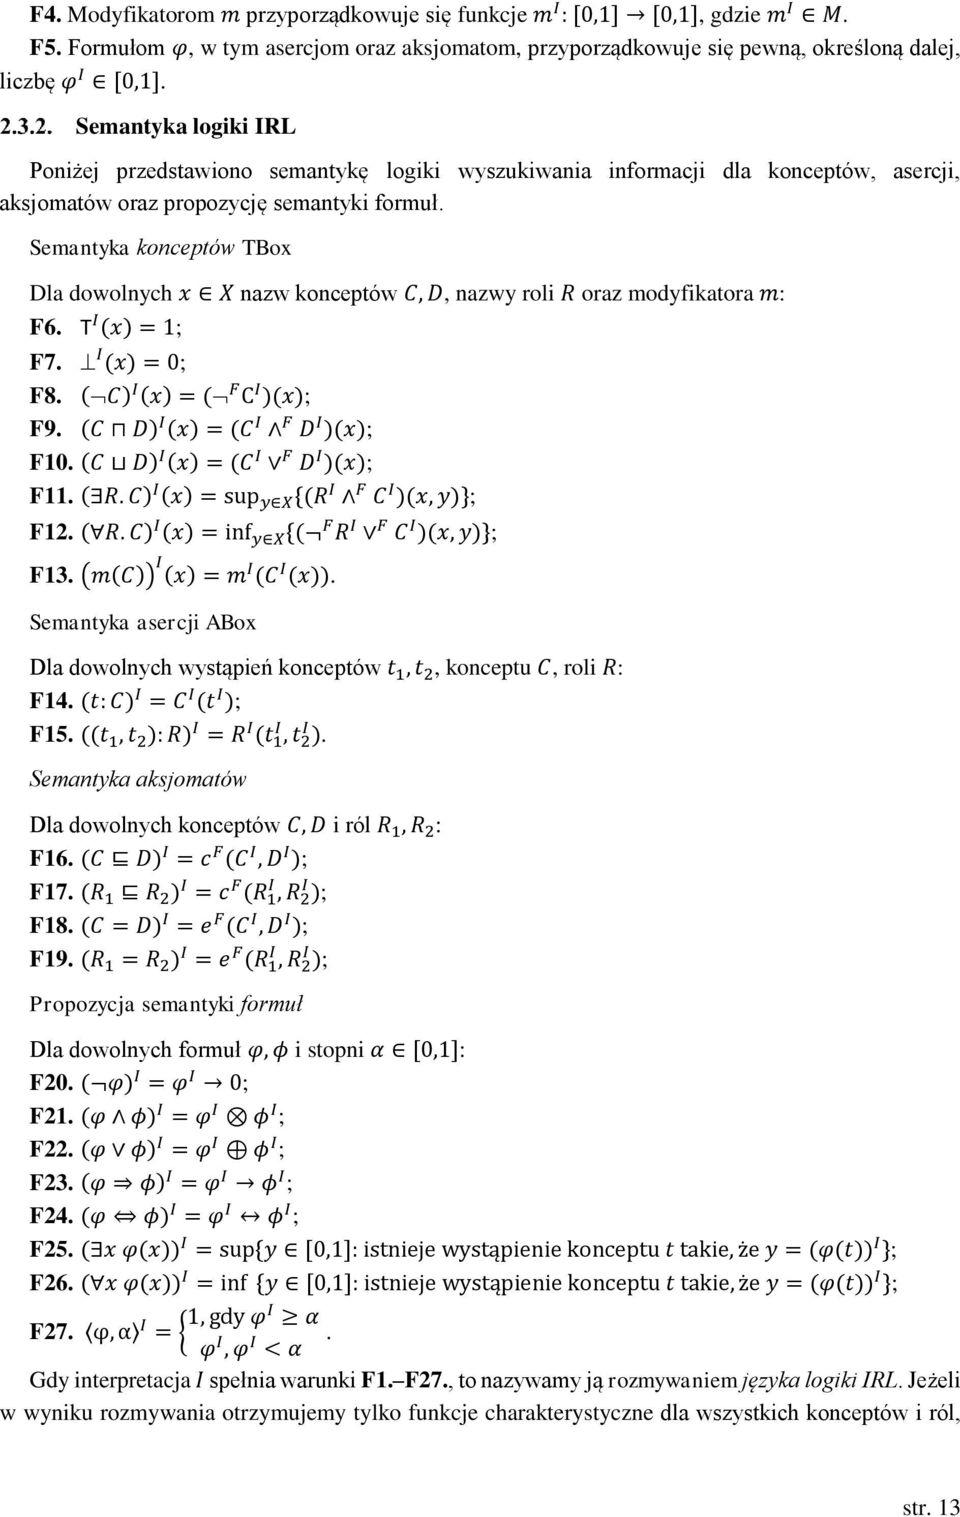 Semantyka konceptów TBox Dla dowolnych x X nazw konceptów C, D, nazwy roli R oraz modyfikatora m: F6. T I (x) = 1; F7. I (x) = 0; F8. (C) I (x) = ( F C I )(x); F9. (C D) I (x) = (C I F D I )(x); F10.